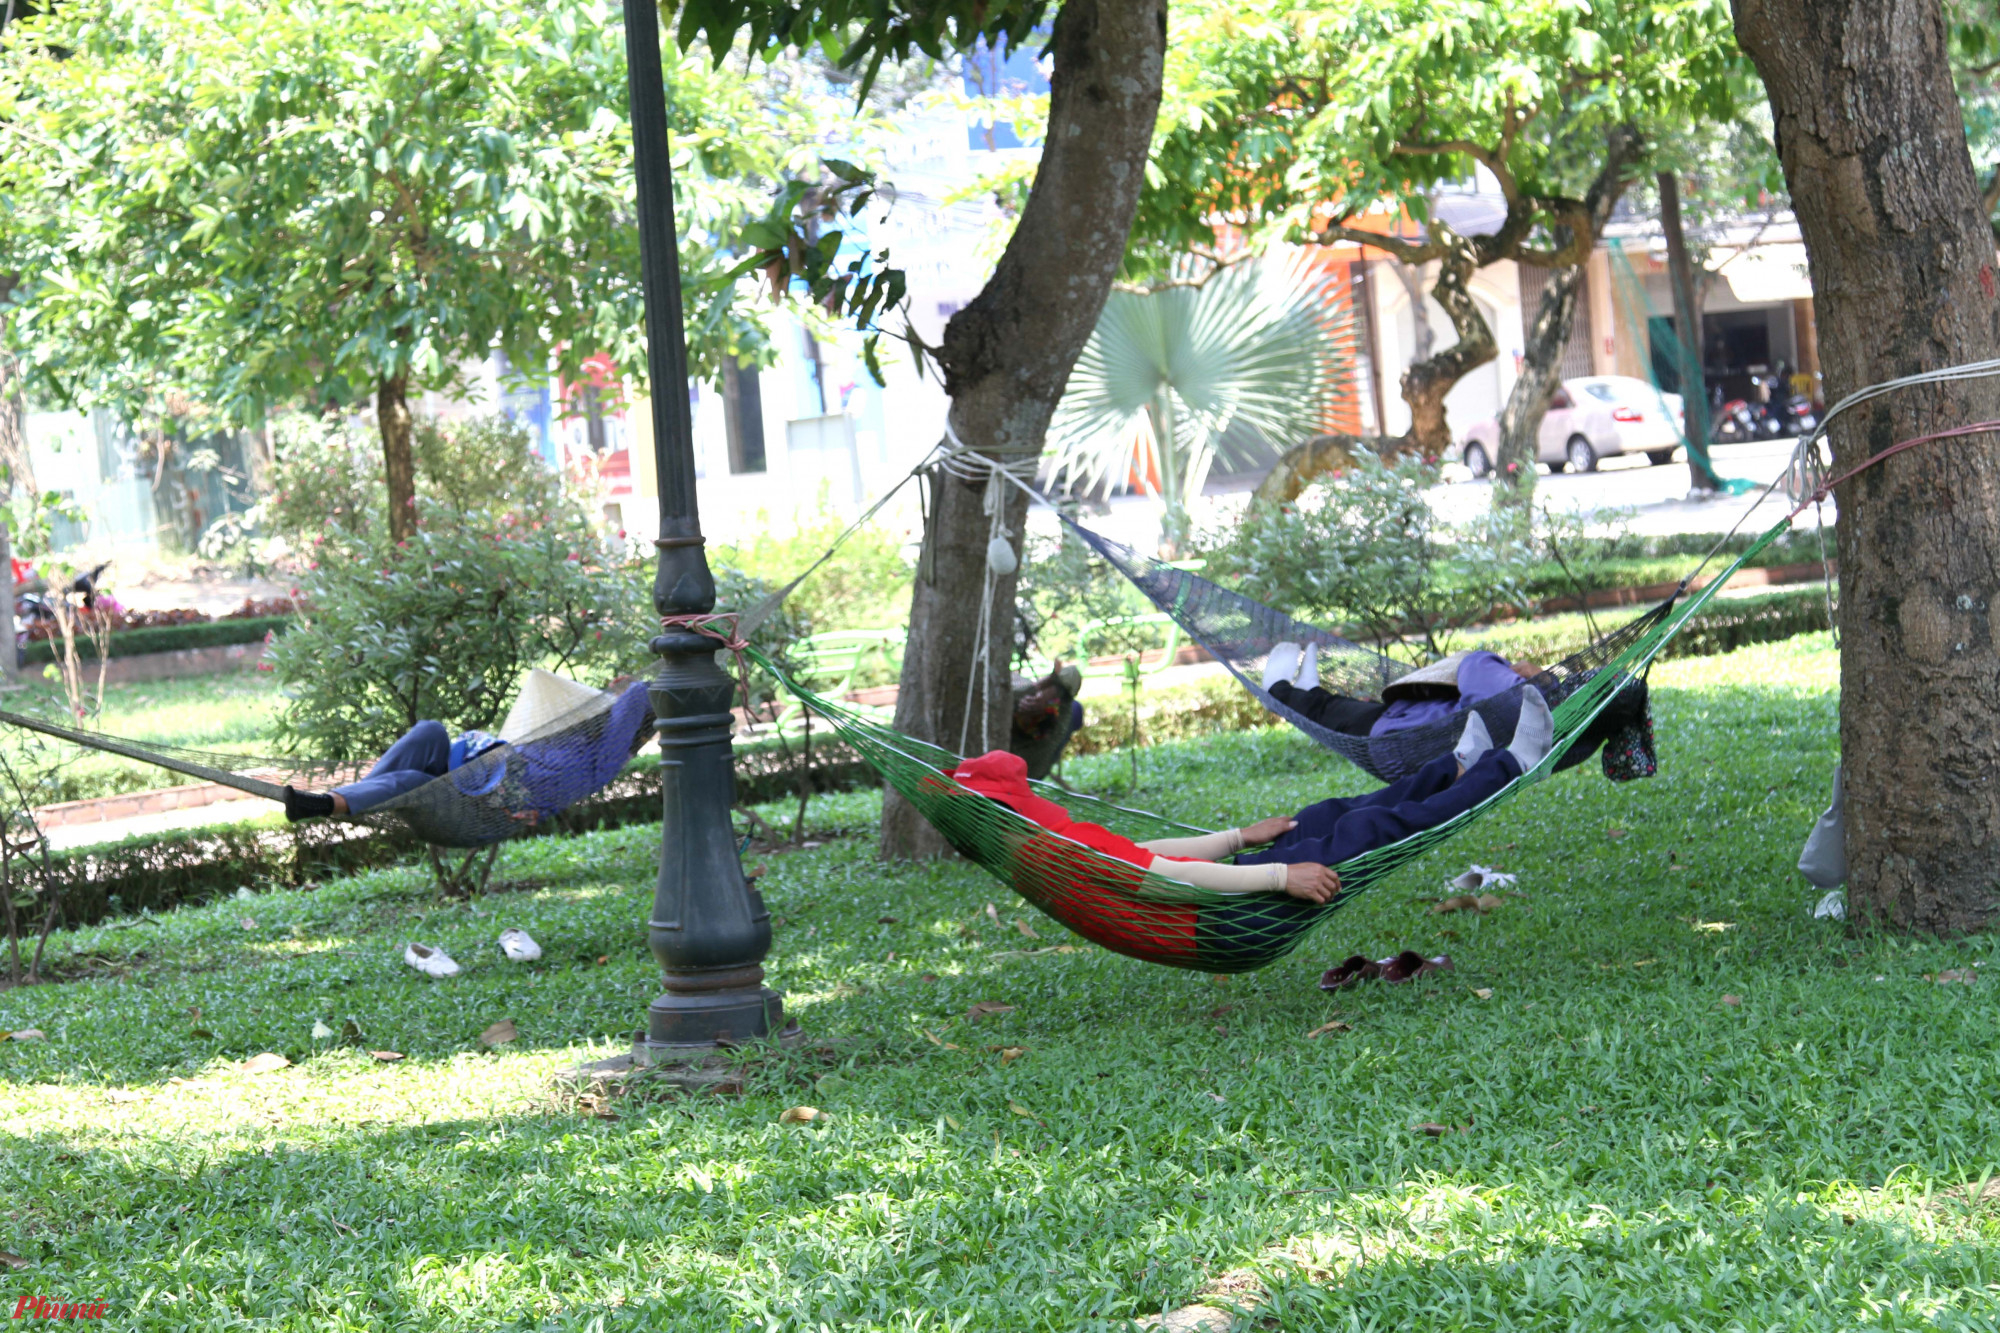 Nhiều người mang theo võng ra mắc dưới các gốc cây để ngủ trưa.